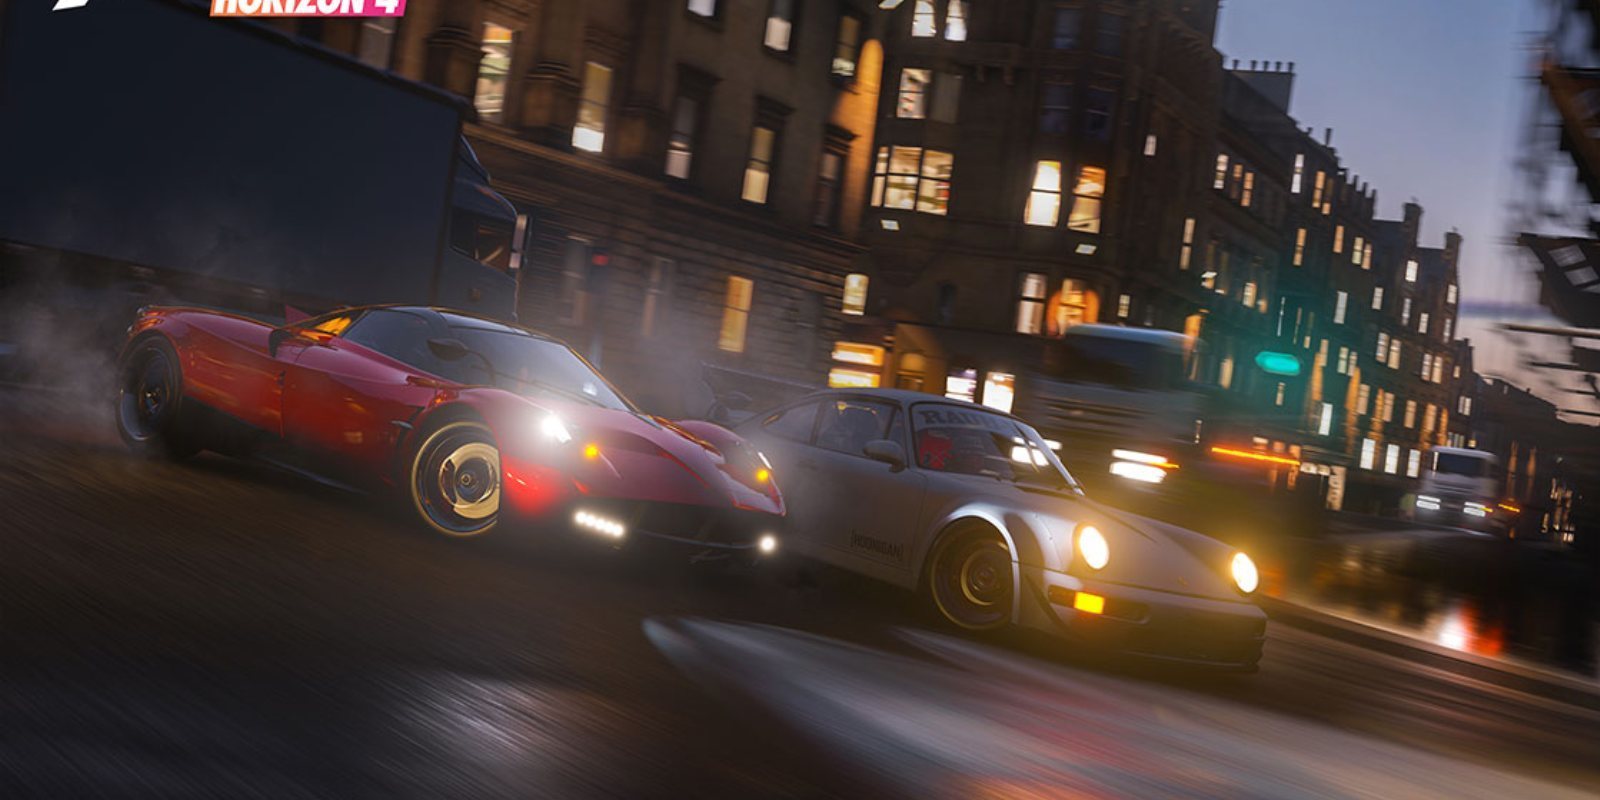 Se confirma la lista completa de vehículos disponibles en 'Forza Horizon 4'